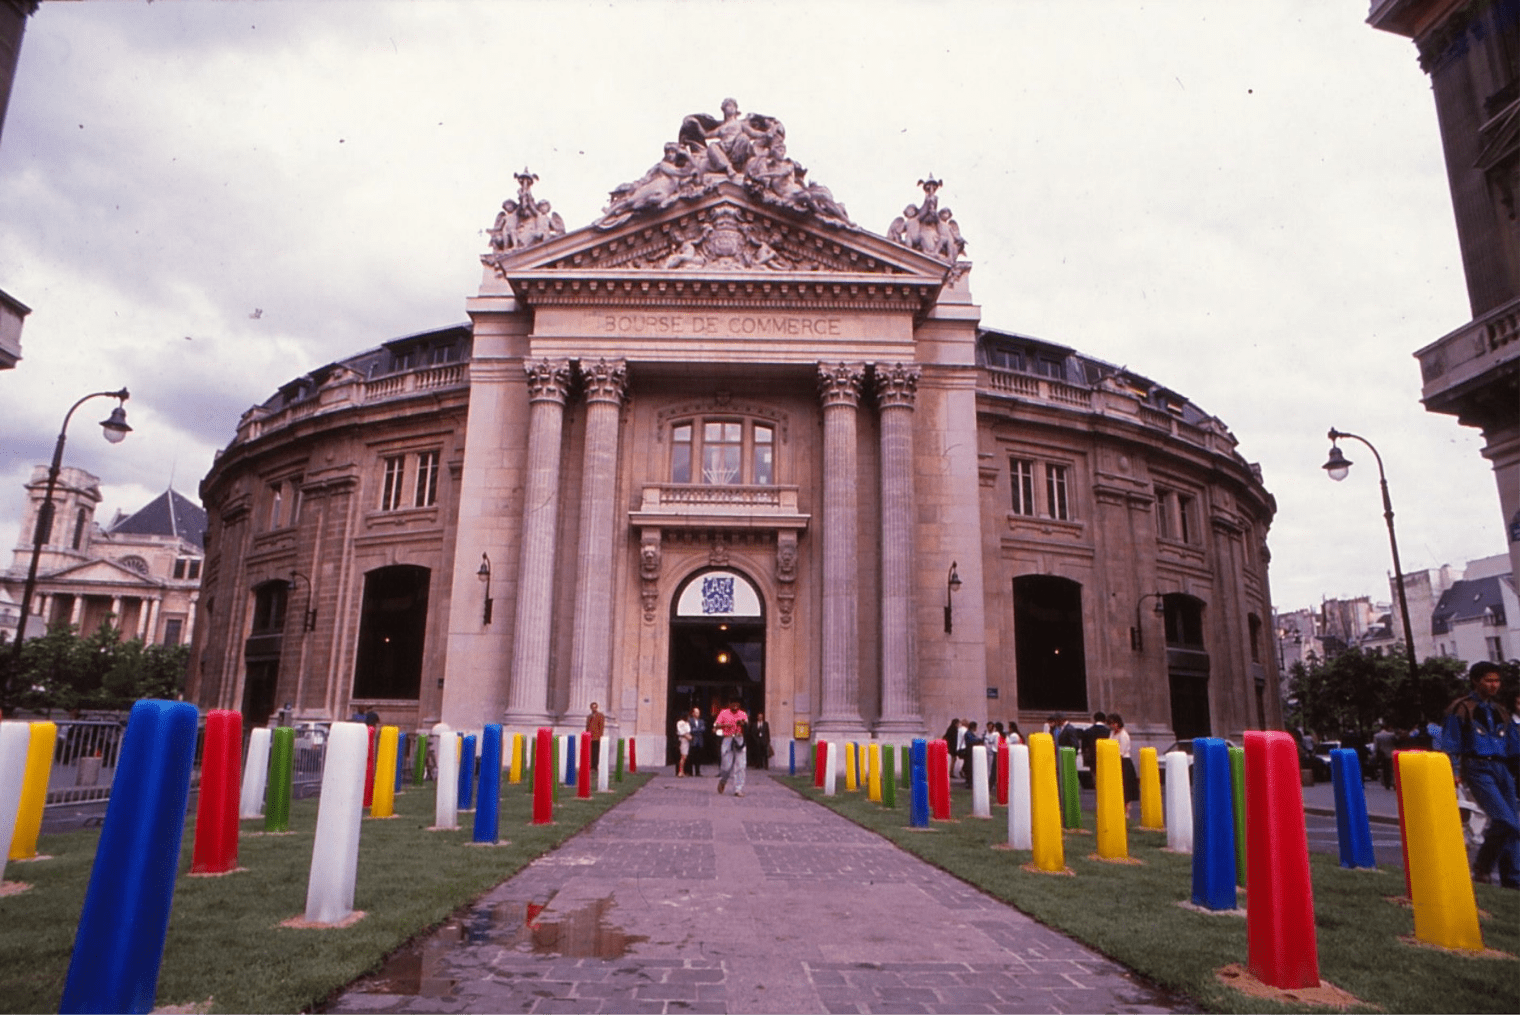 EXPOSITION L’ART DÉCODÉ, BOURSE DE COMMERCE DE PARIS, 1990 : GALERIE DE BEYRIE, PAINS DE GLACE, BERNARD TURIN